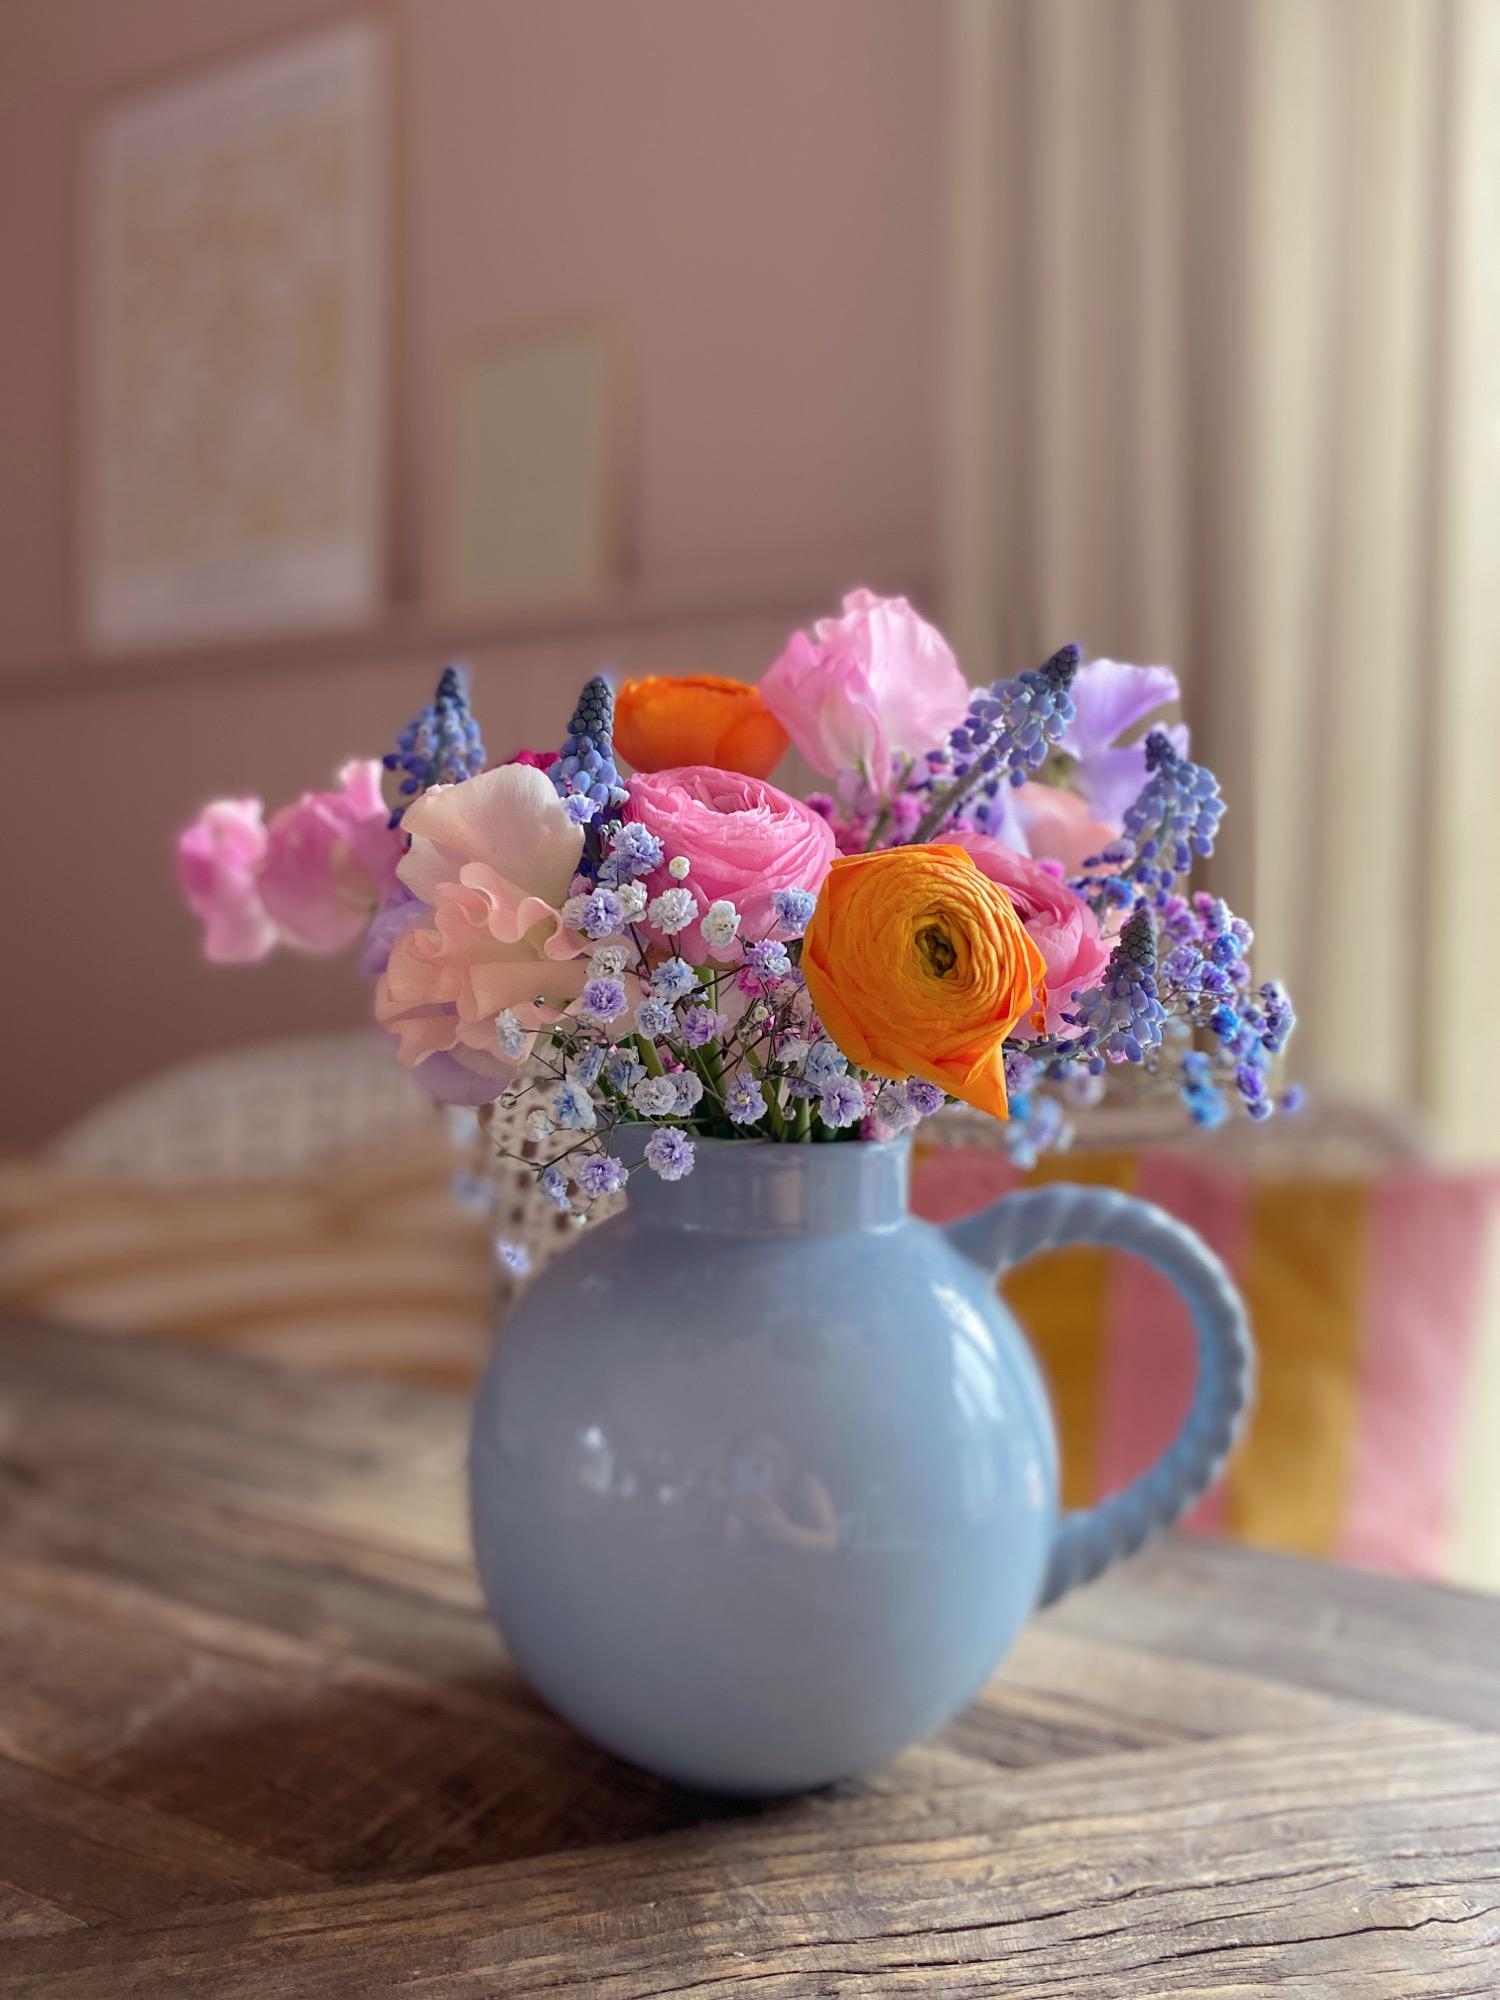 Farbe gegen das grau in grau von draußen.
#blumenmachenglücklich#vase#bouqet#flowers#farbenfroh